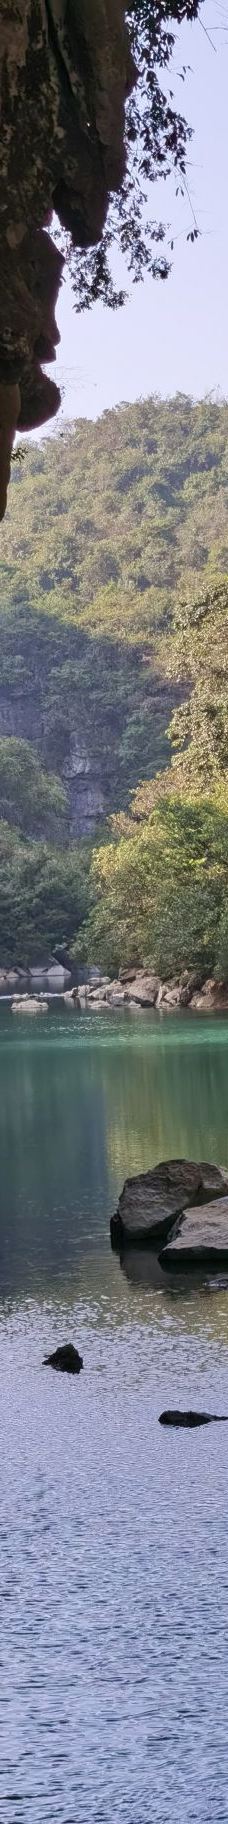 鹿寨香桥岩溶国家地质公园-鹿寨